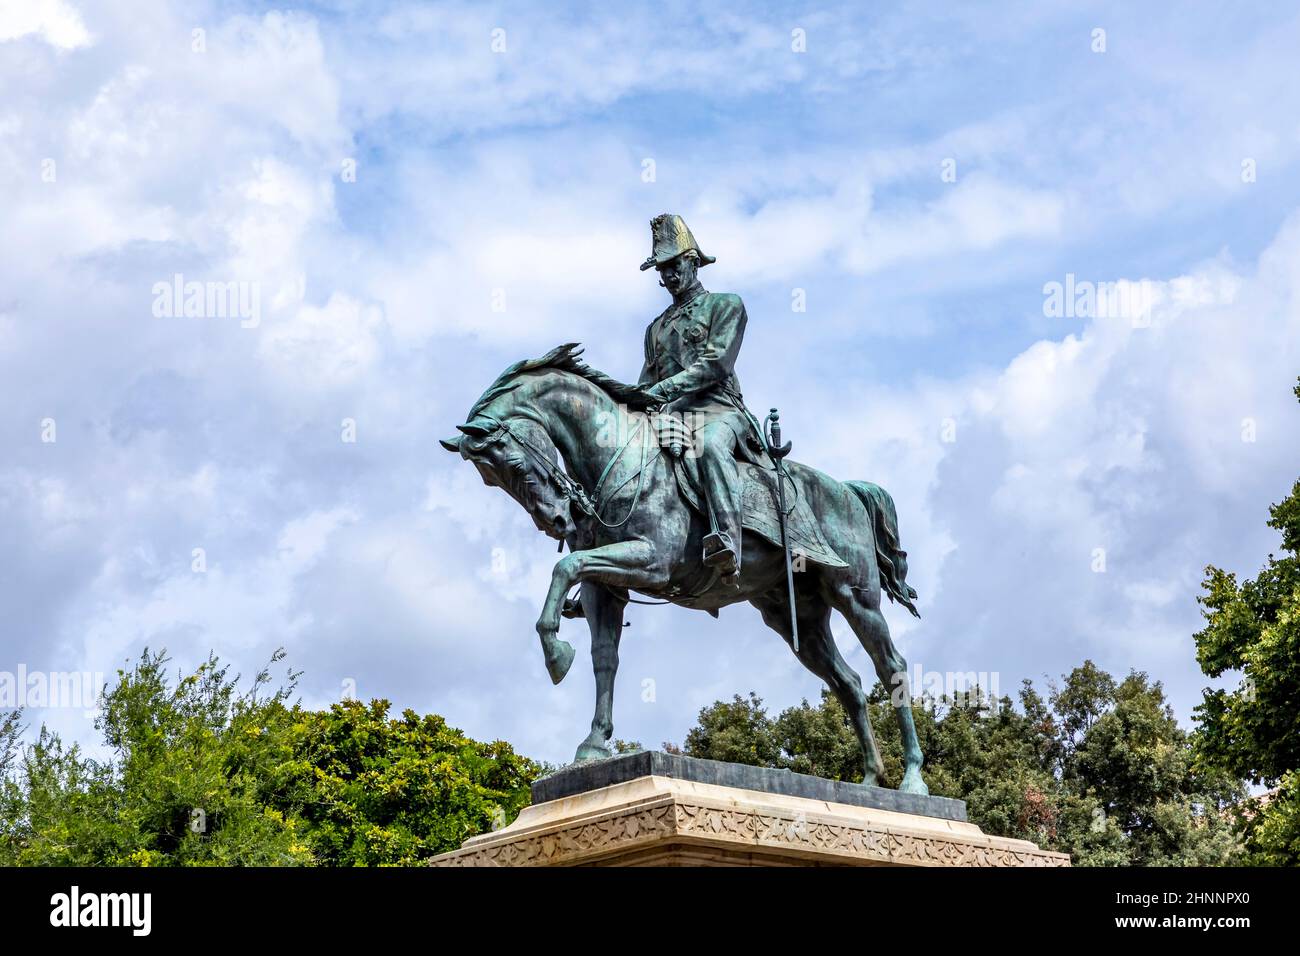 public park Giardino in Rome with rider statue of  Carlo Alberto In Rome Stock Photo